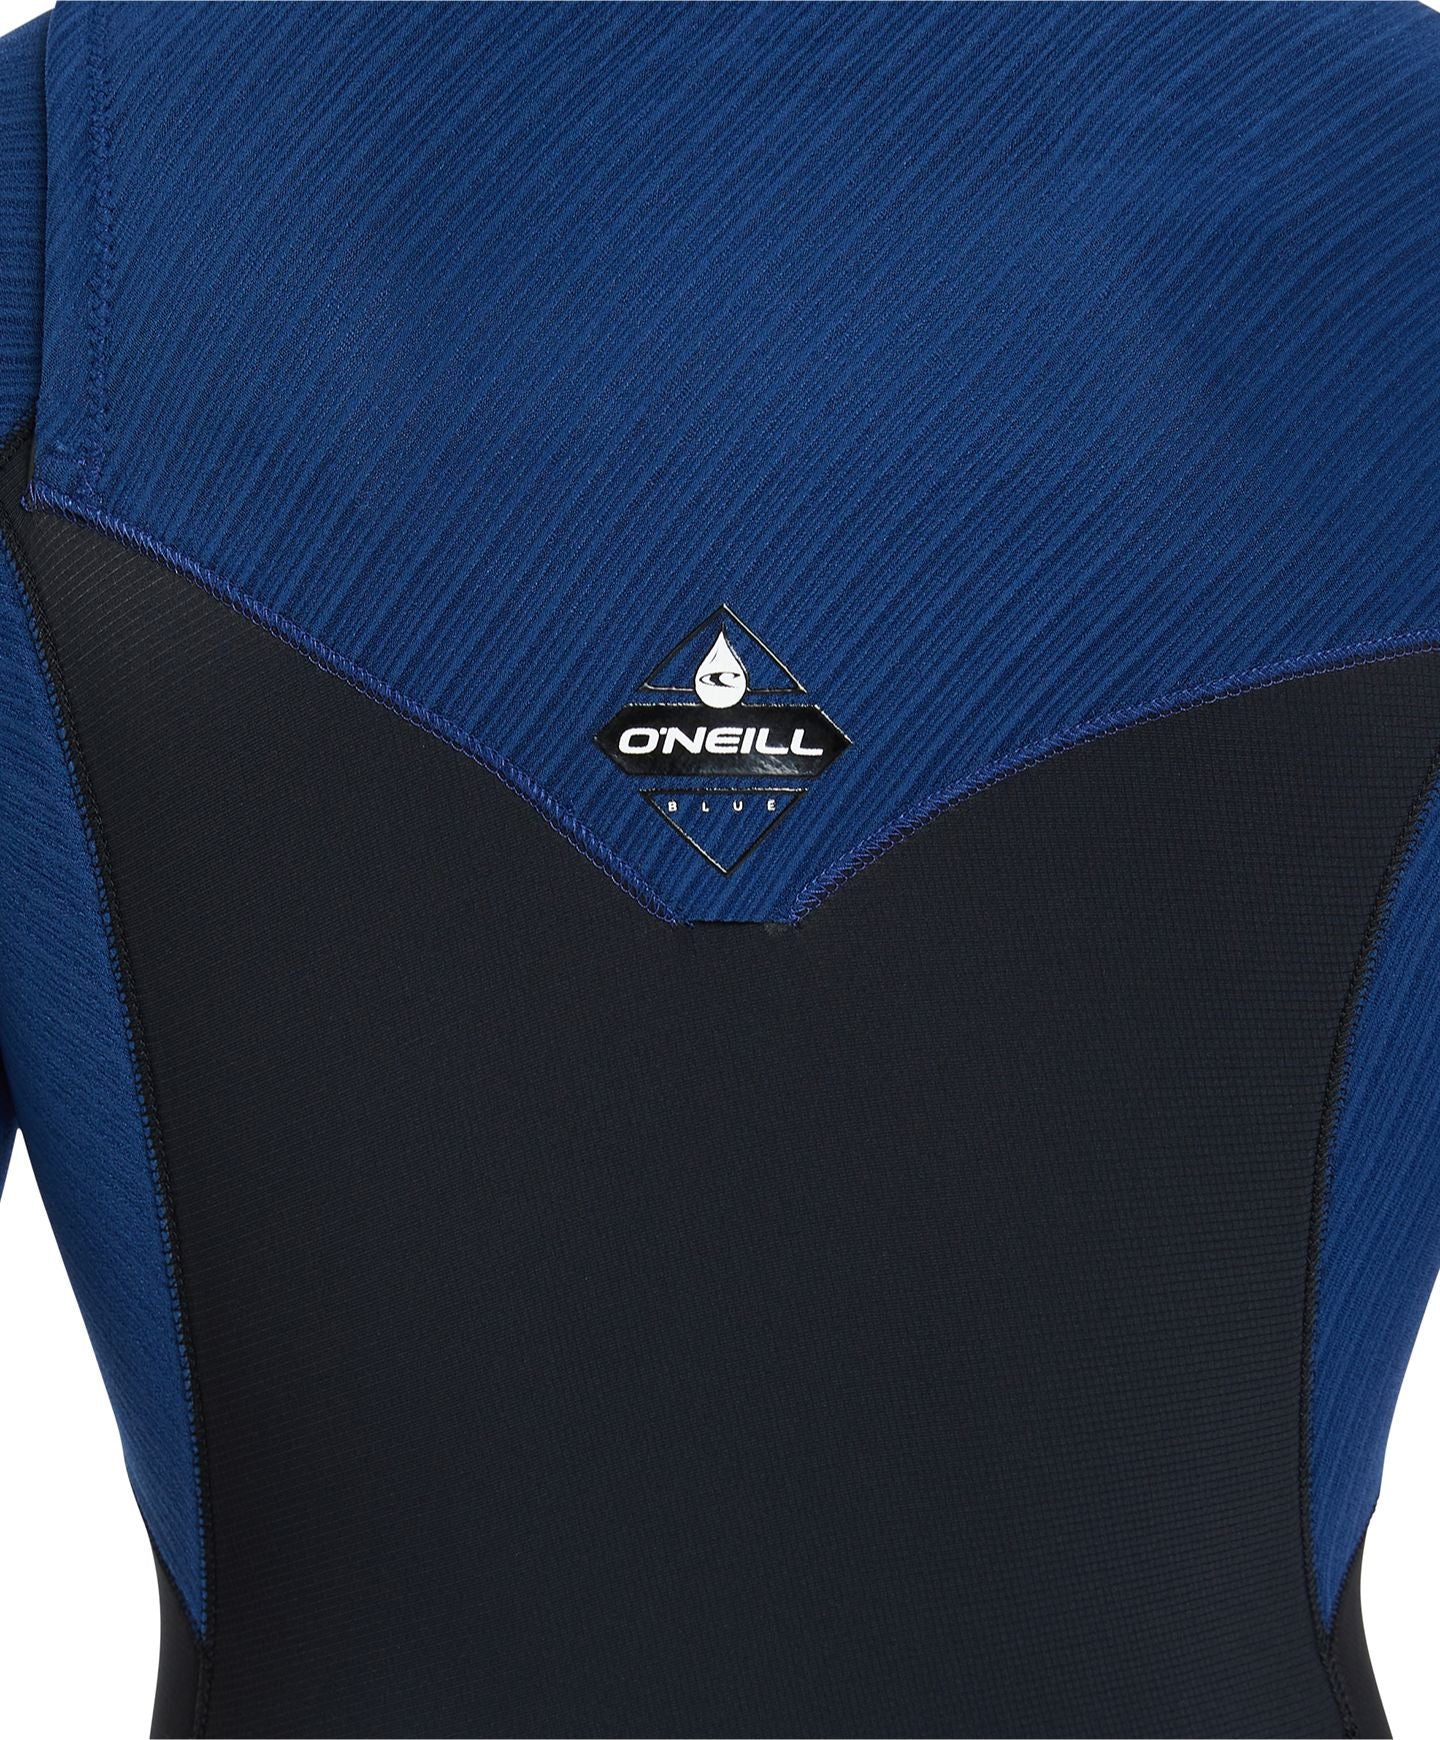 Hyperfreak 2mm Short Sleeve Springsuit Chest Zip Wetsuit - Black Marine